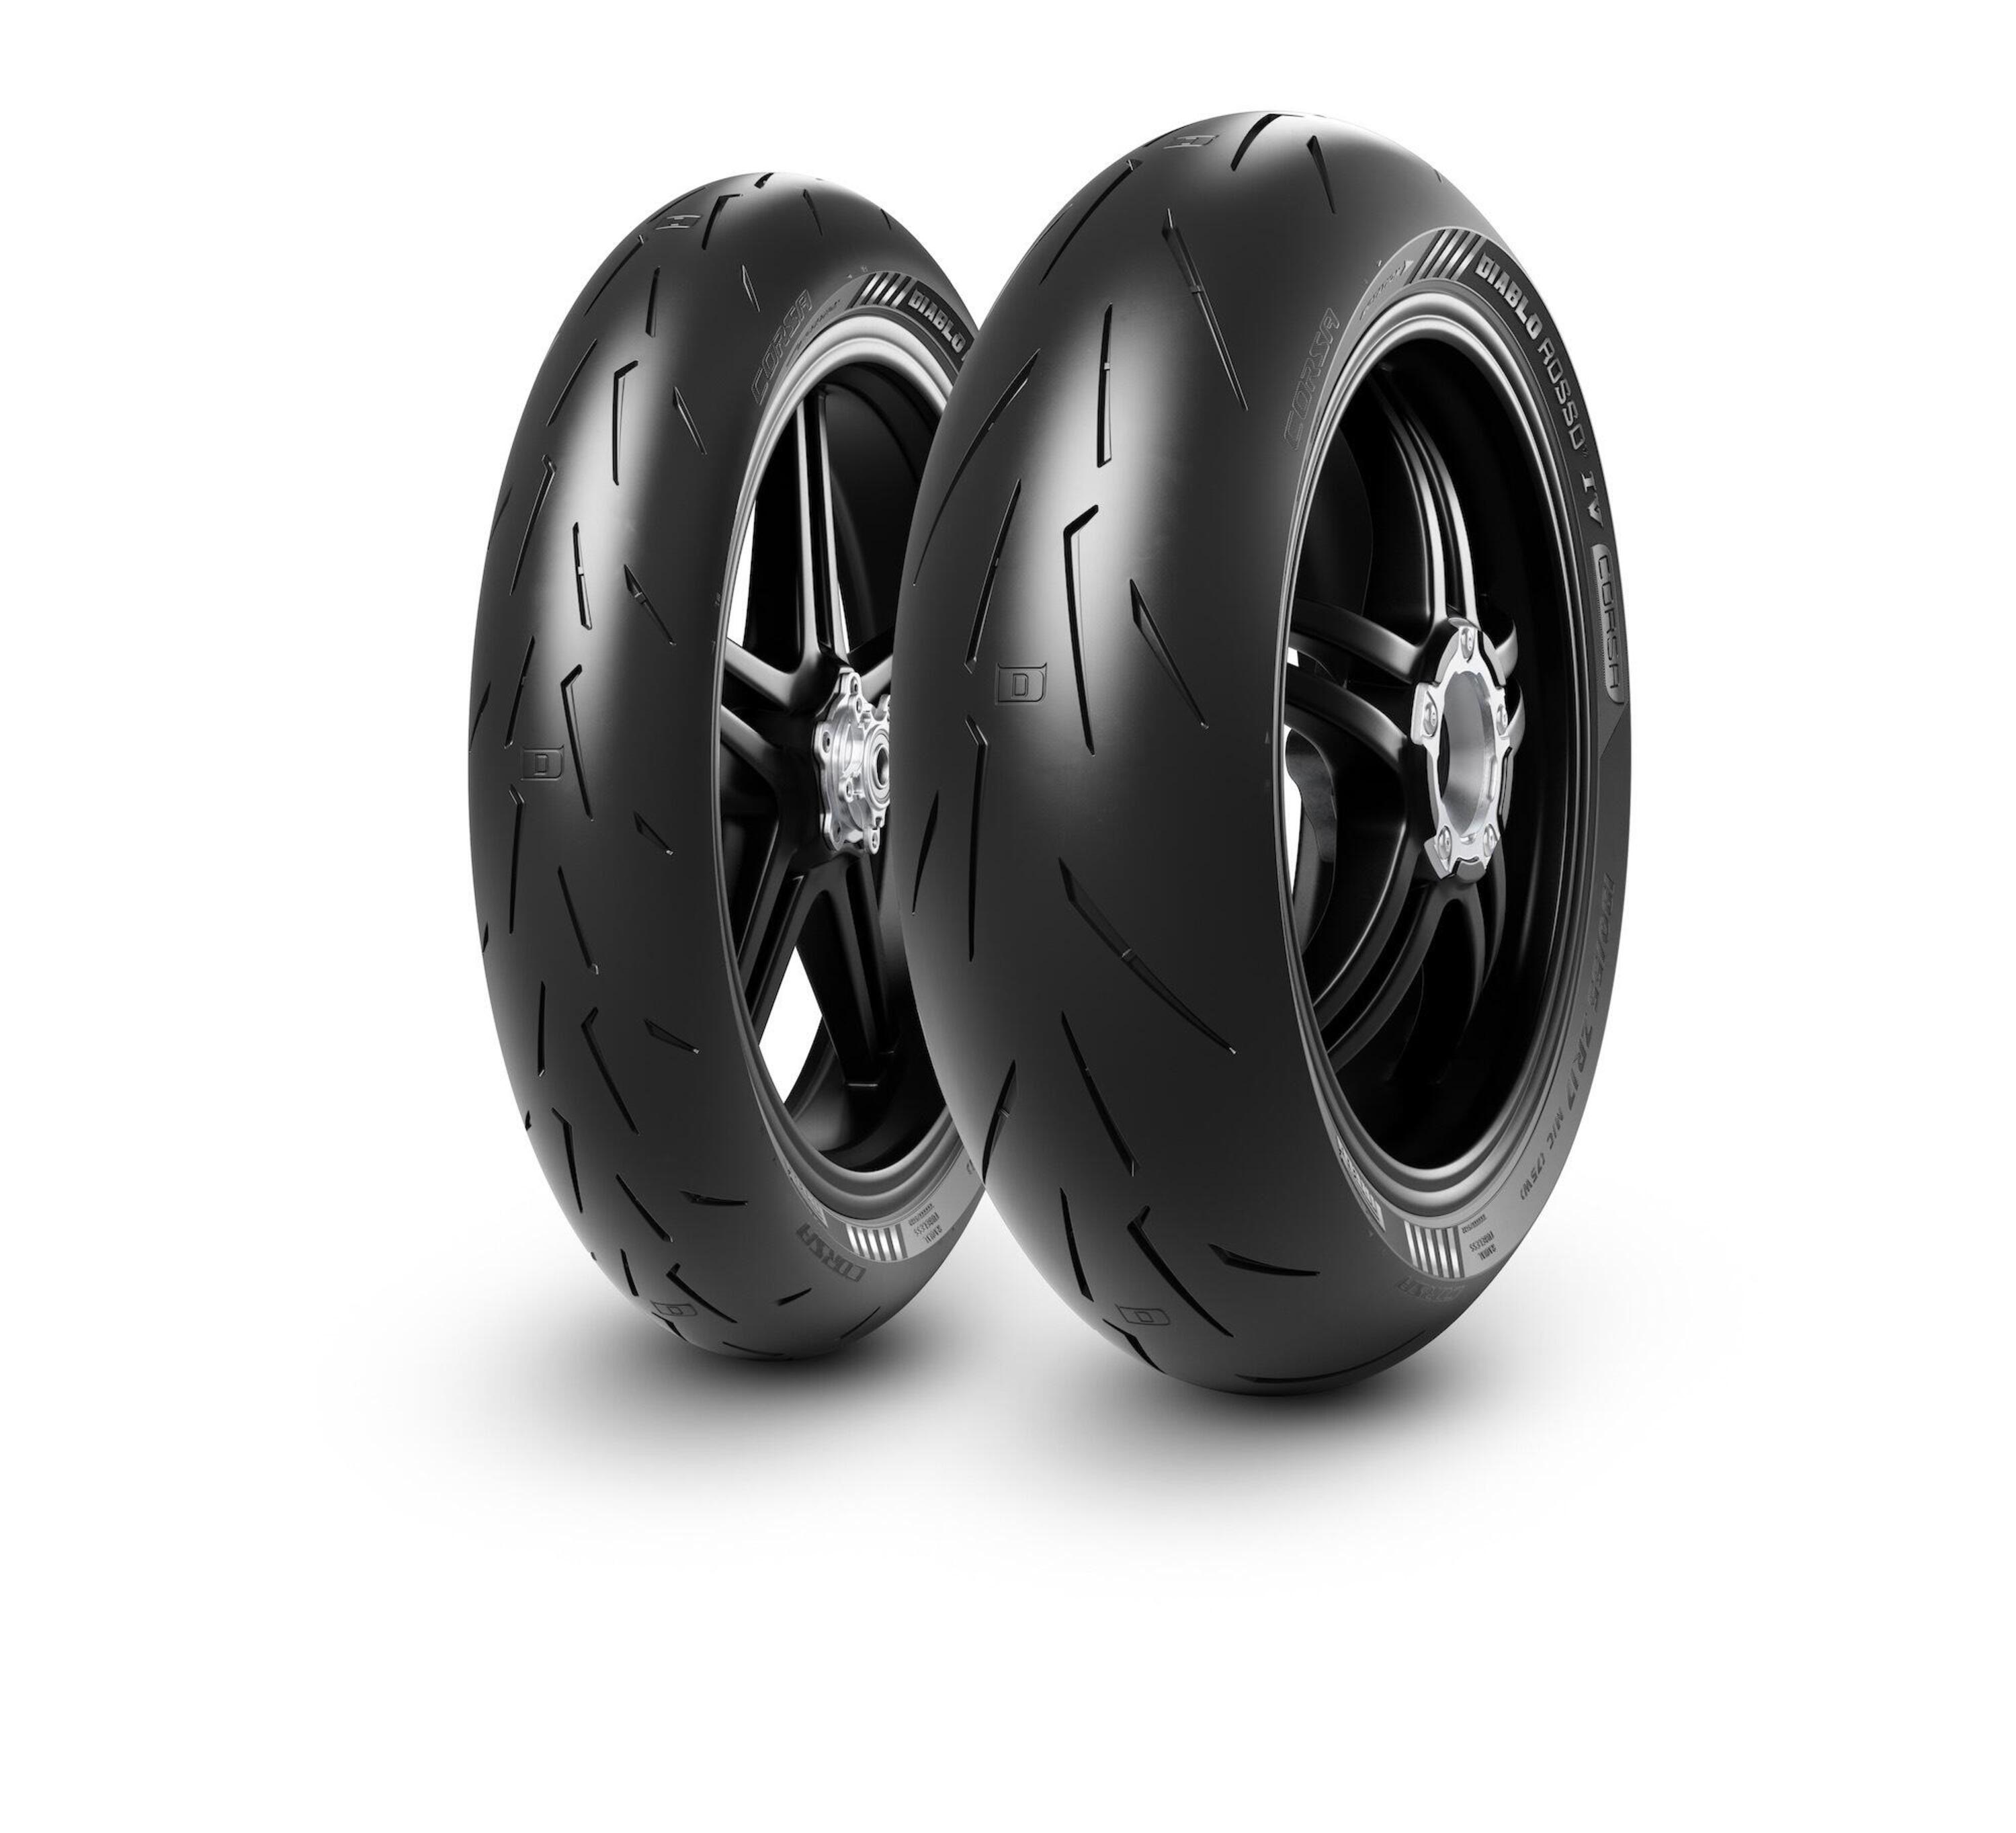 Gomme Nuove Pirelli 110/70 R17 54W DIABLO ROSSO IV CORSA FRONT pneumatici nuovi Estivo